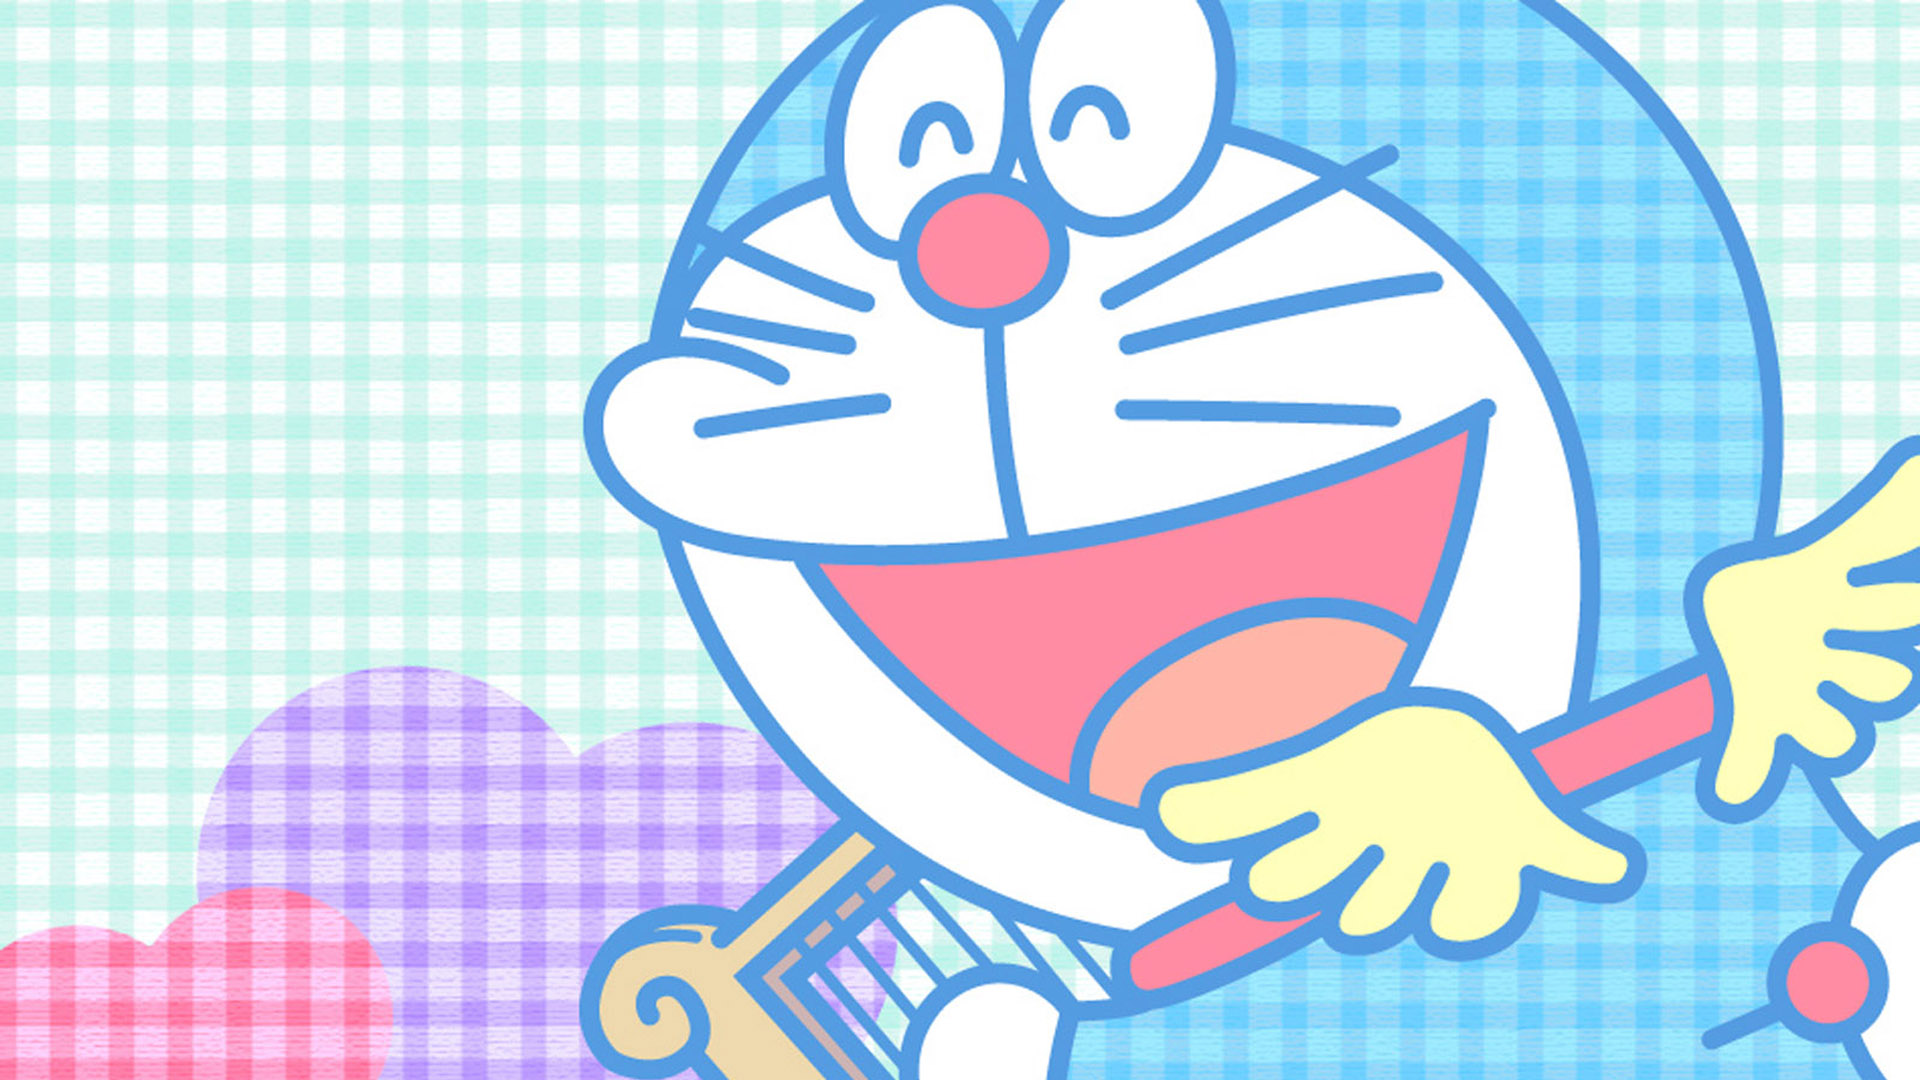 Hình nền Doraemon 1920x1080 - cho dù bạn đang sử dụng máy tính hay điện thoại, hình nền Doraemon độ phân giải cao này sẽ khiến màn hình của bạn trở nên vô cùng sống động và bắt mắt. Hãy tải về và trở thành fan hâm mộ Doraemon thực thụ!